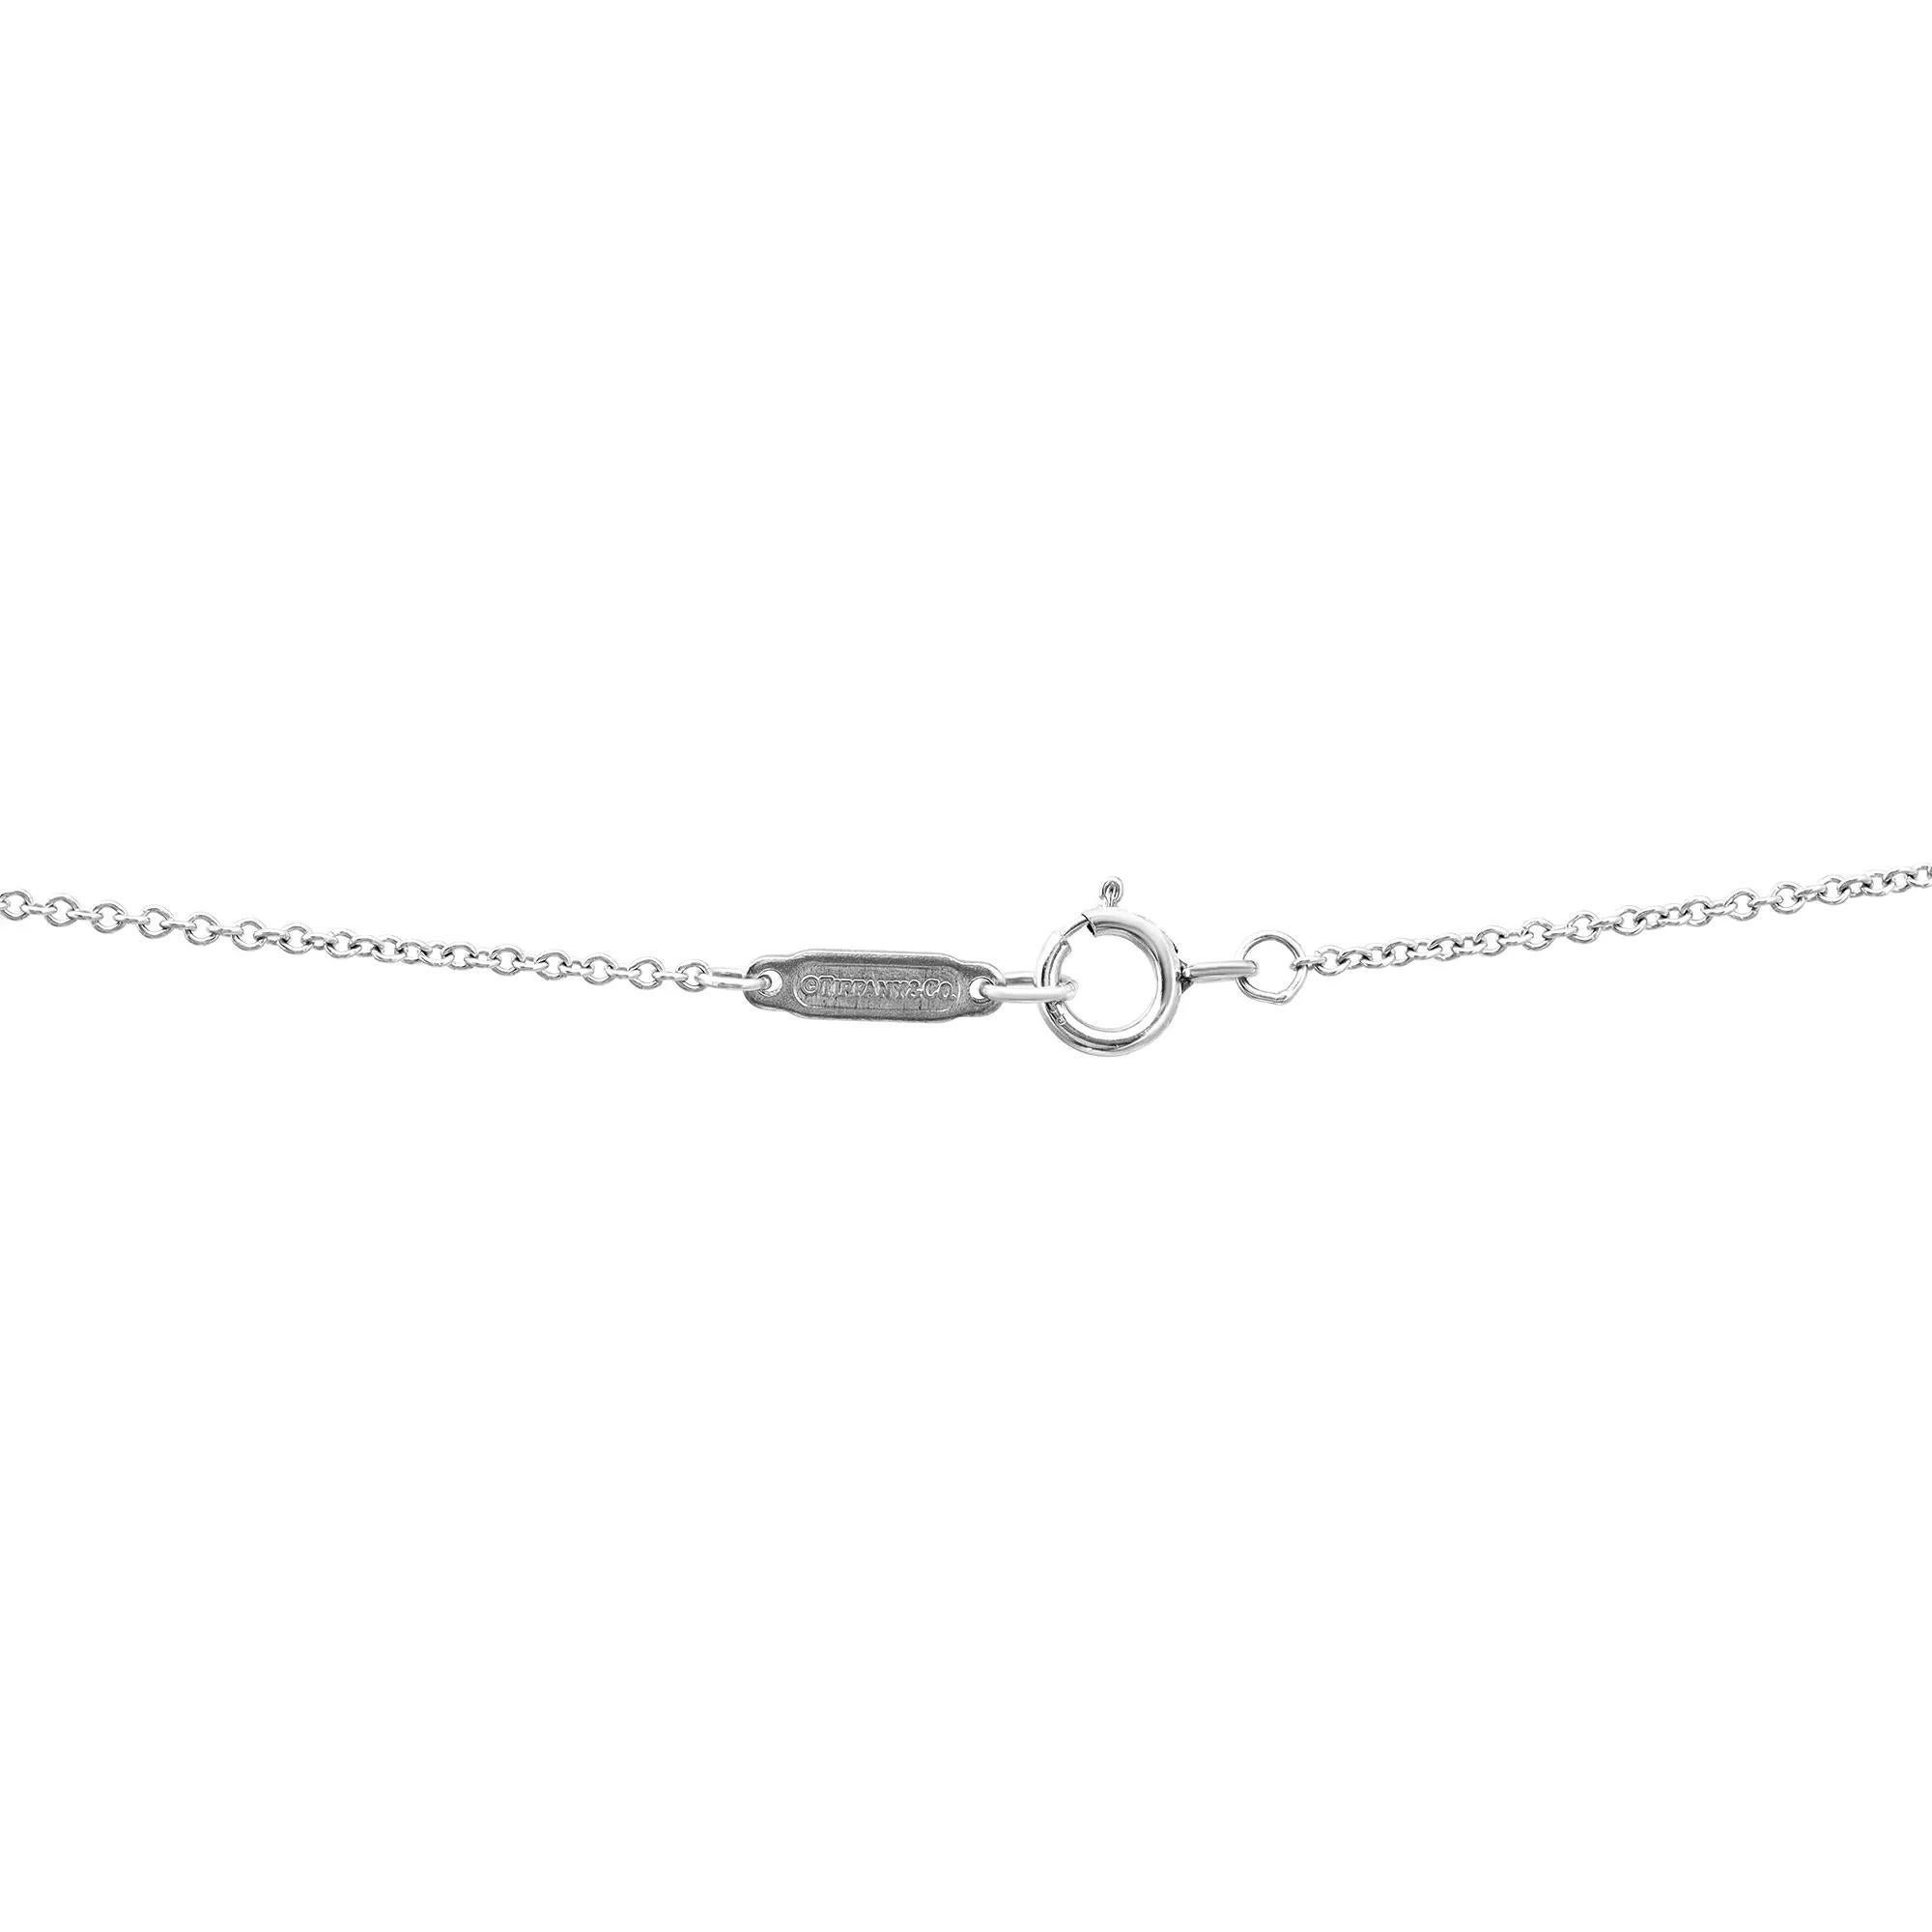 Round Cut Tiffany & Co Fleur De Lis Diamond Key Pendant Necklace Platinum 16 Inches